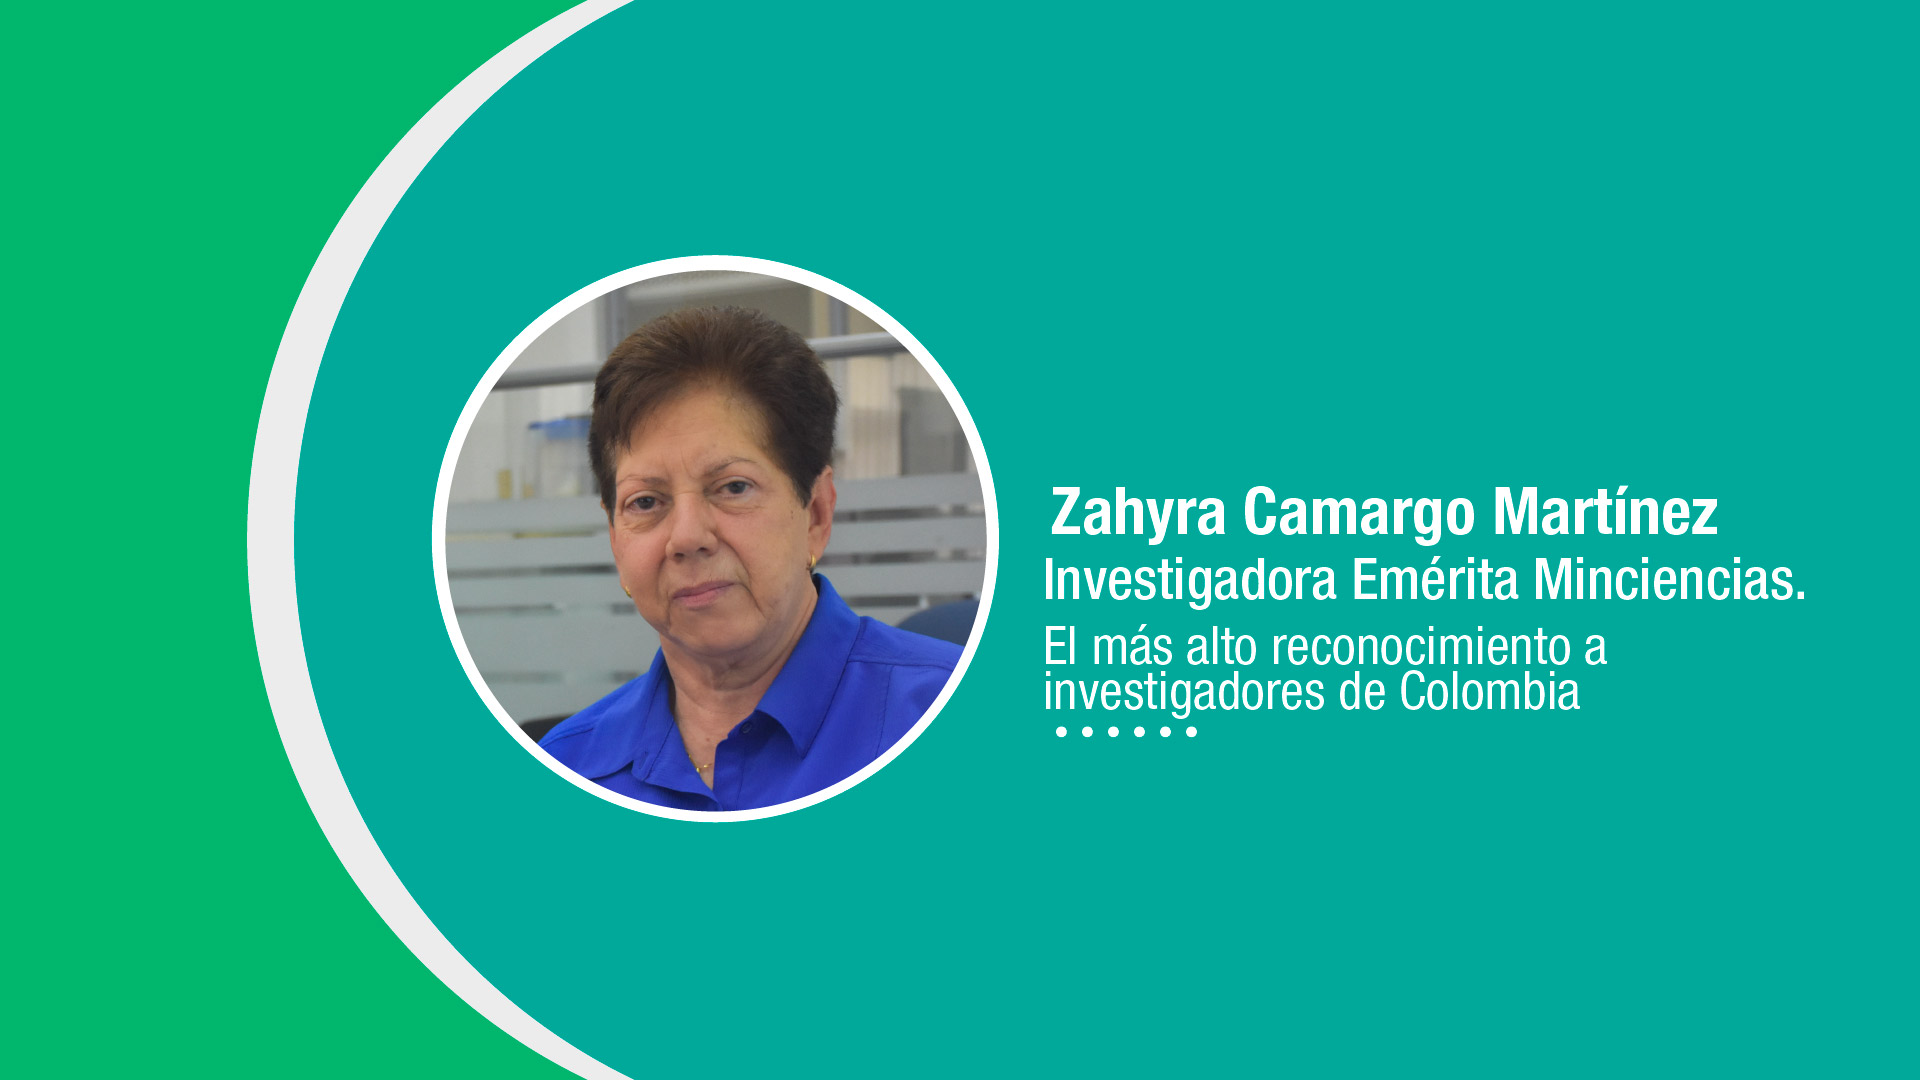 Zahyra Camargo Martínez, Investigadora Emérita Minciencias. El más alto reconocimiento a investigadores de Colombia